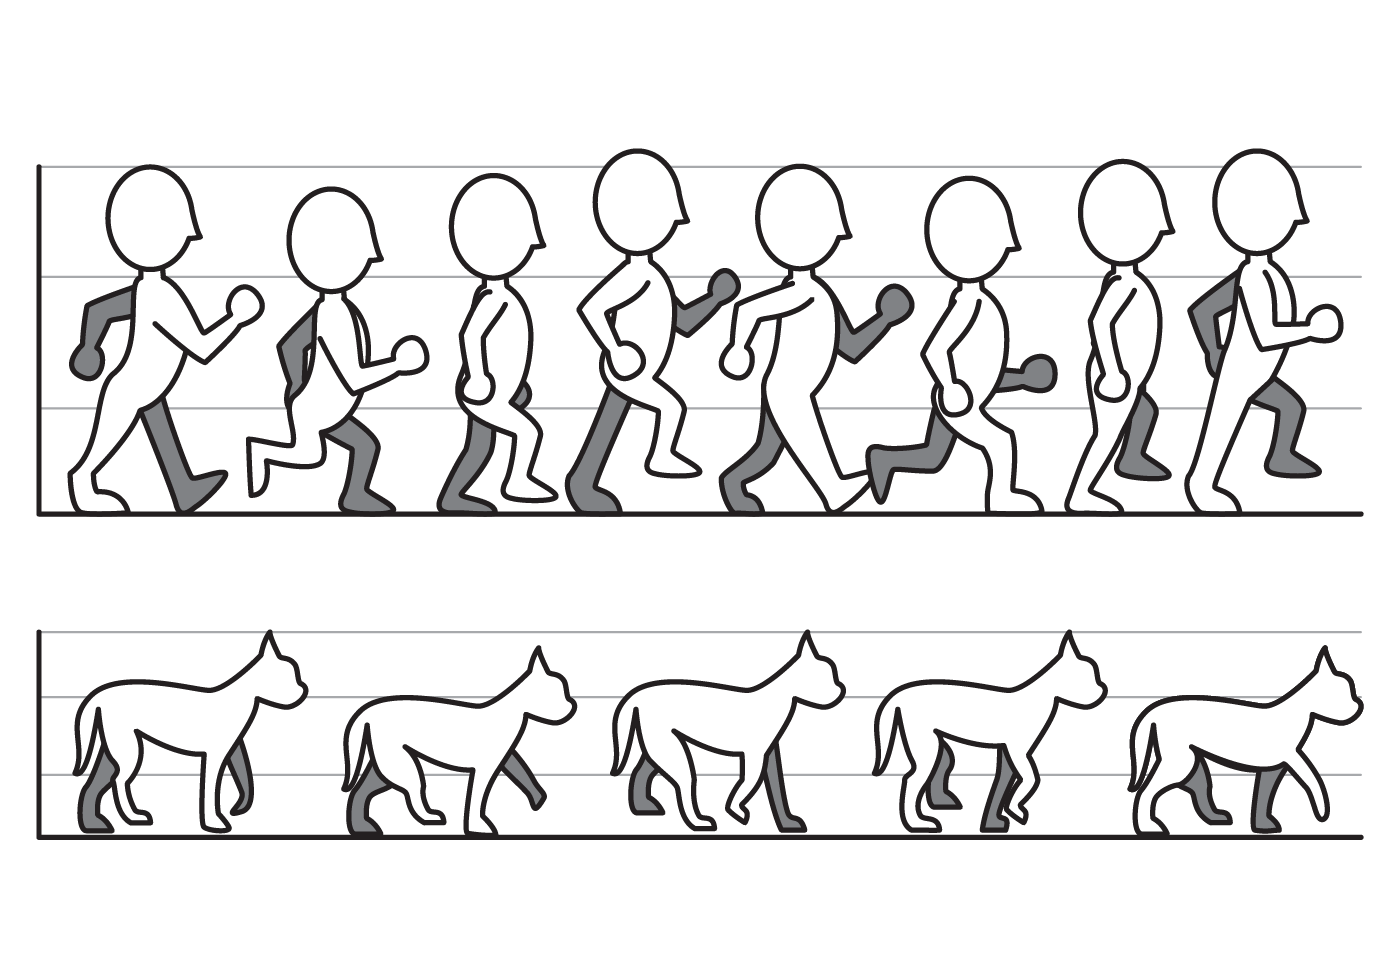 Animation templates. Покадровая ходьба человека. Покадровая походка человека. Анимация ходьбы.